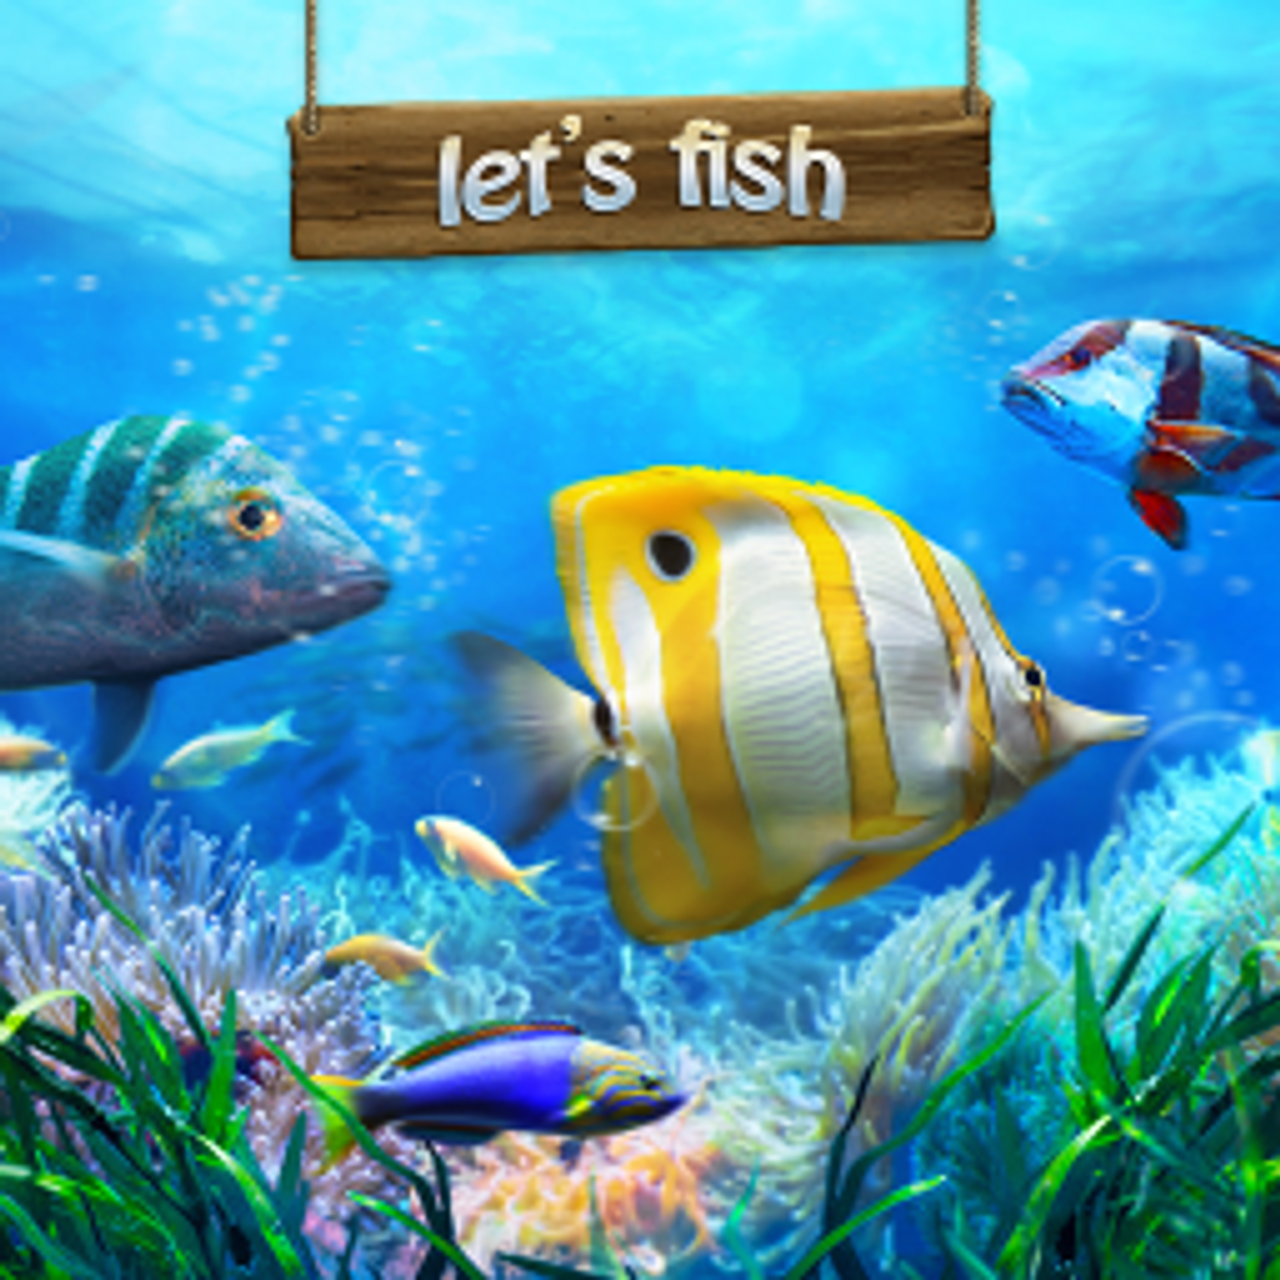 Let's Fish Online